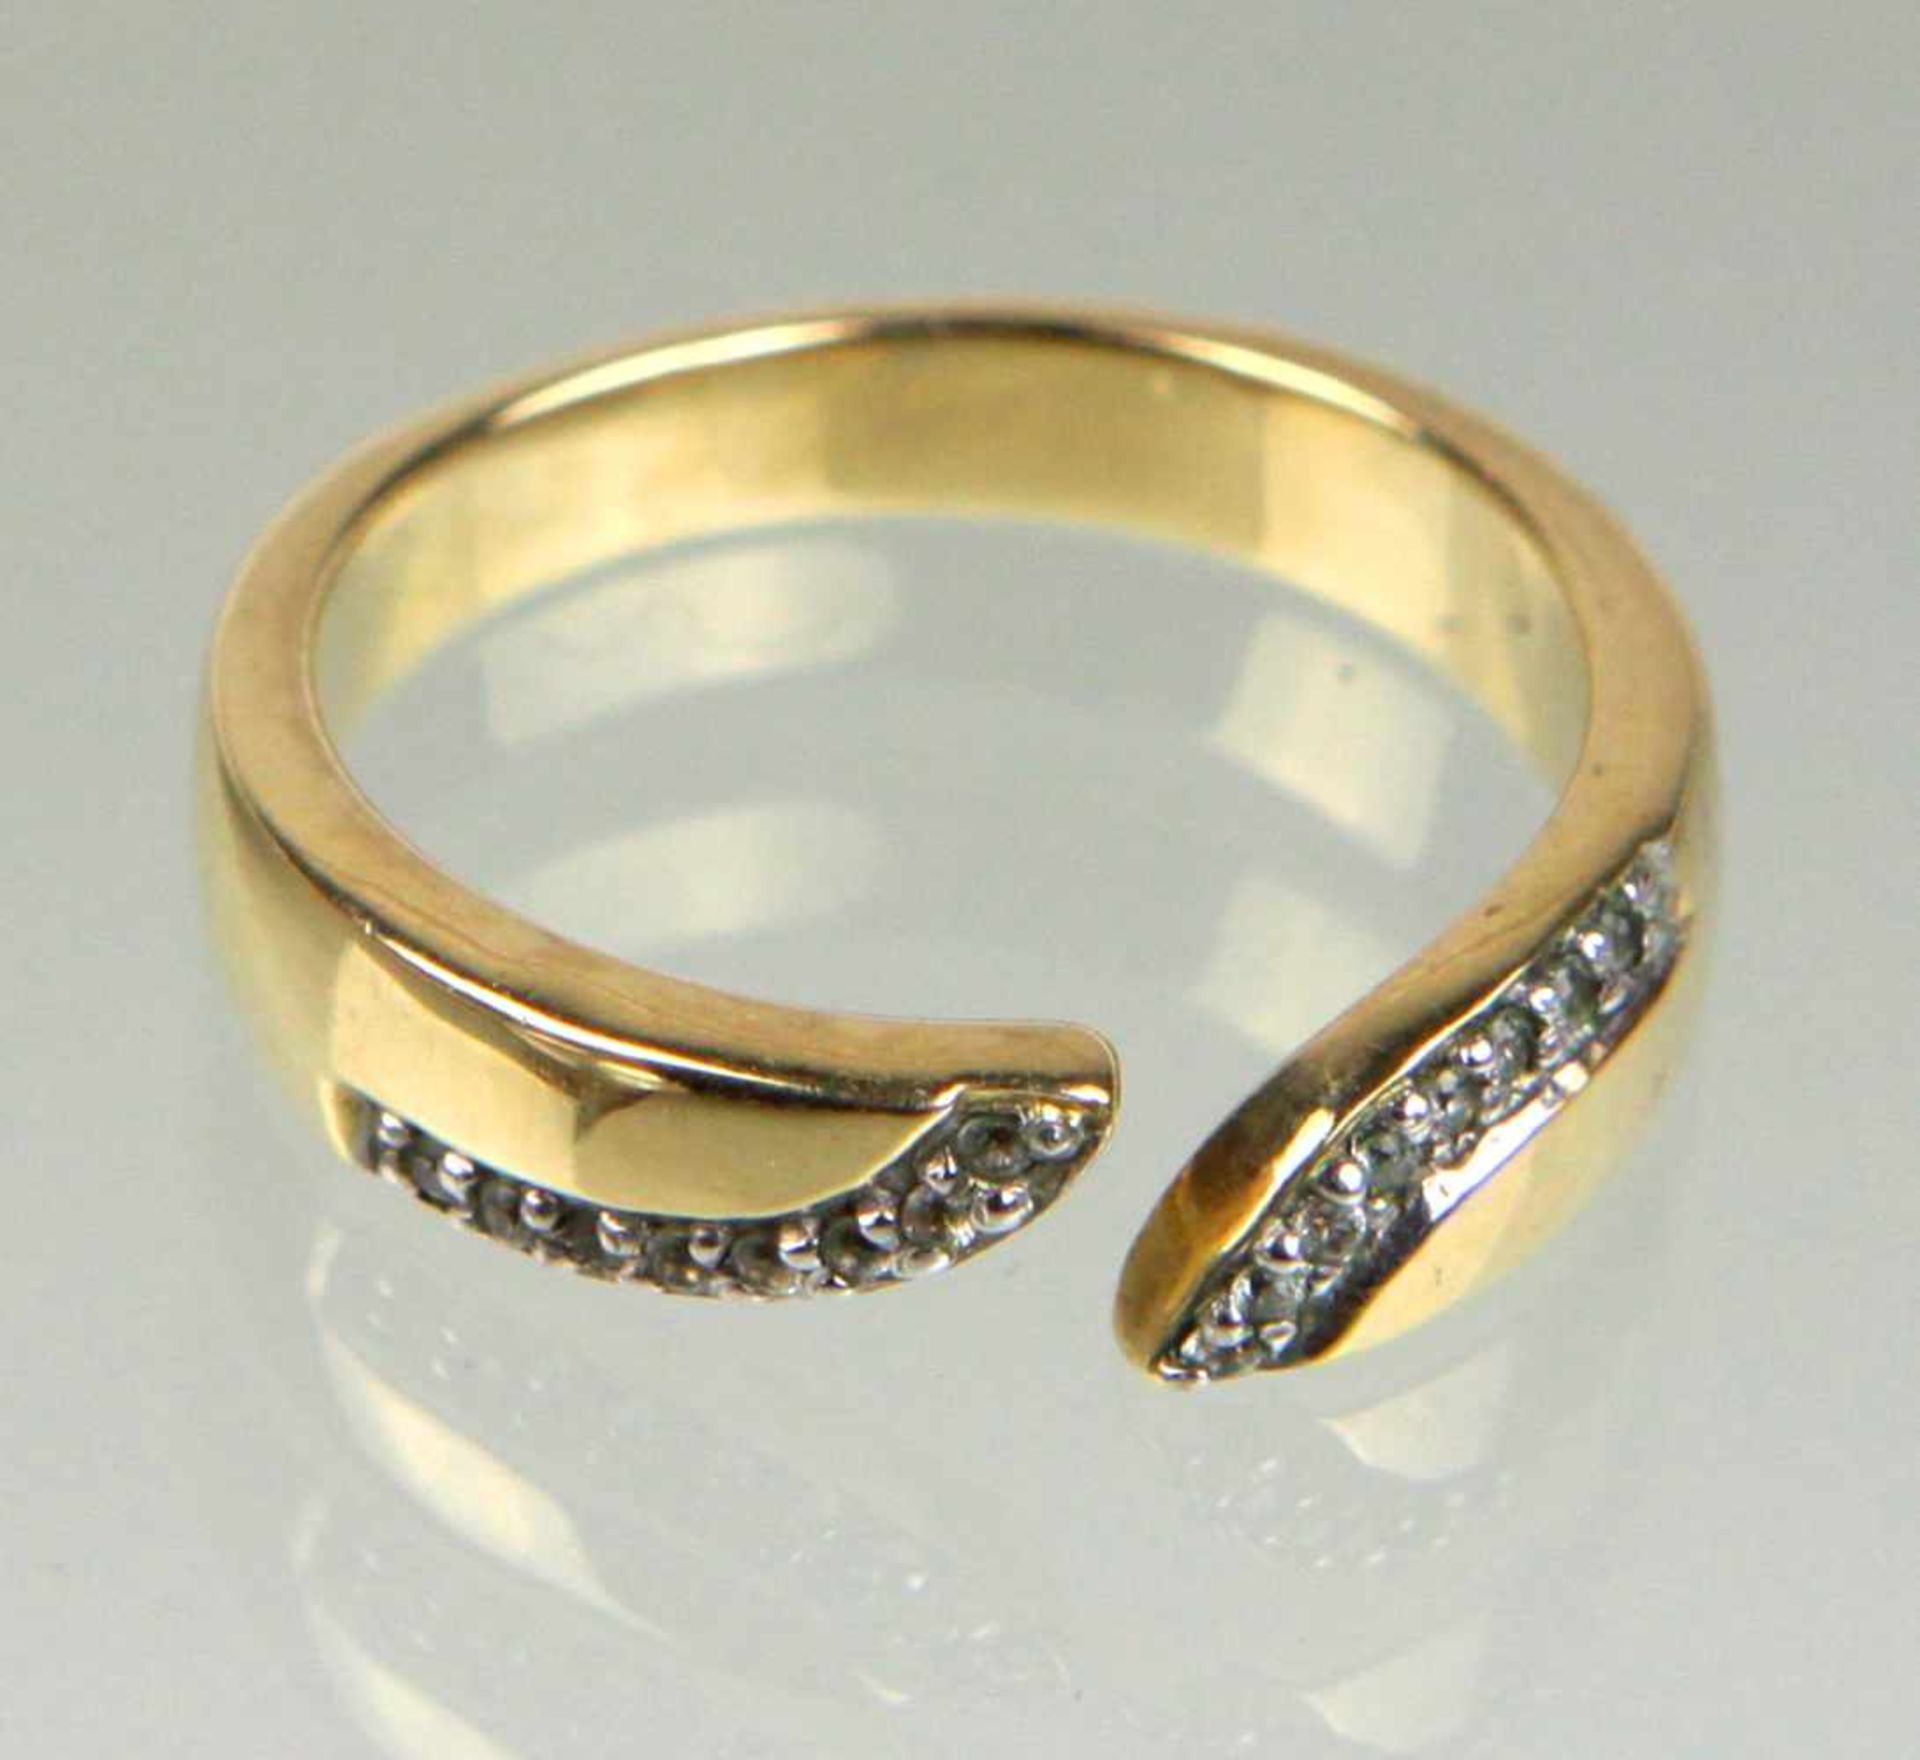 Ring mit weißen Saphiren - GG 375in Gelbgold 375 (9 Karat) gearbeitet u. punziert, leicht